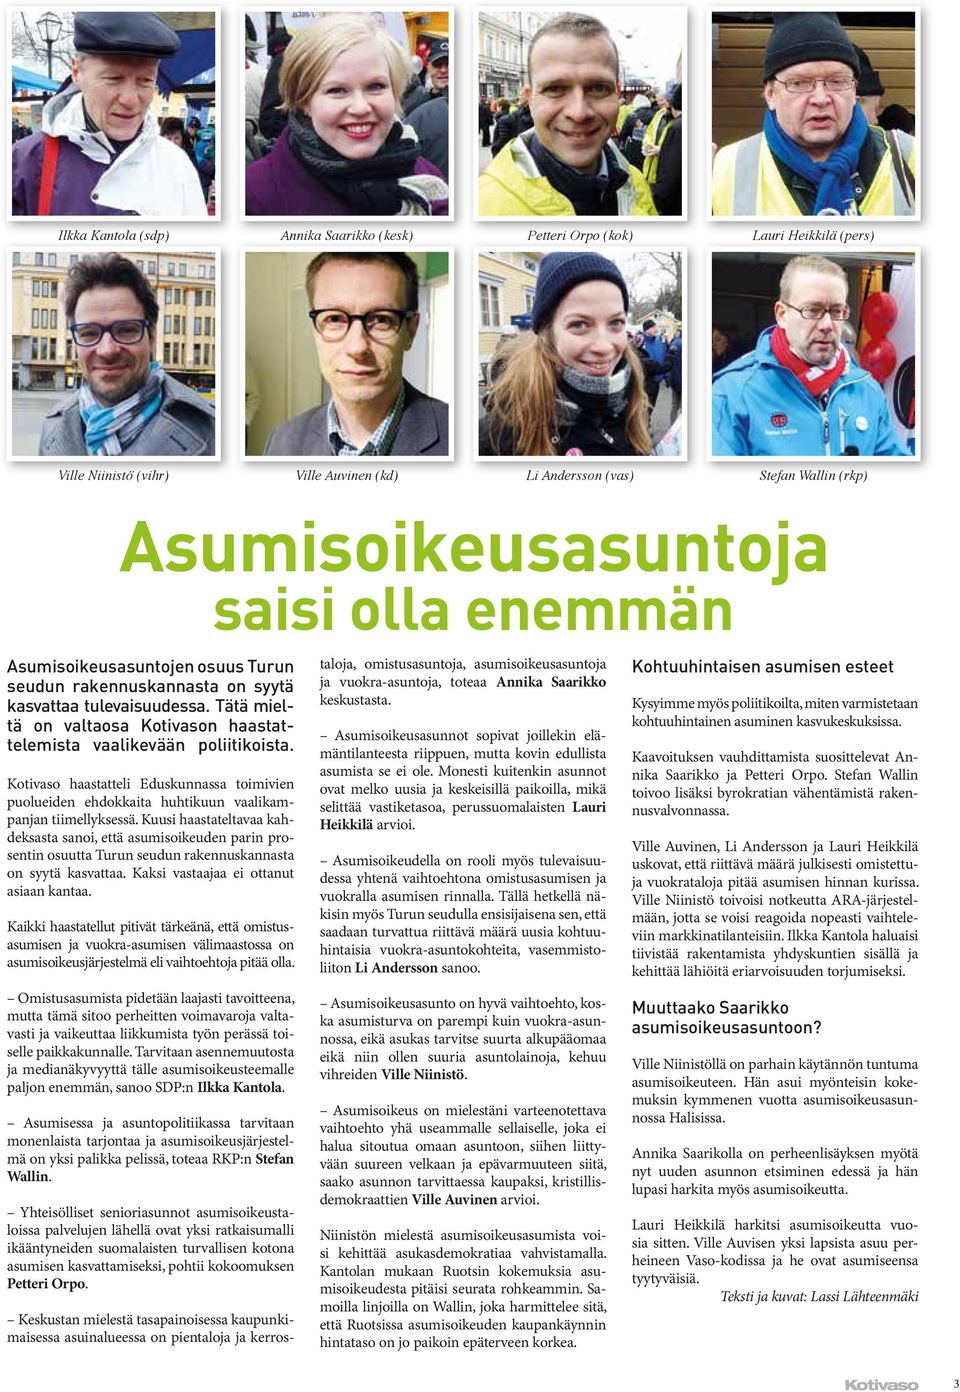 Kotivaso haastatteli Eduskunnassa toimivien puolueiden ehdokkaita huhtikuun vaalikampanjan tiimellyksessä.